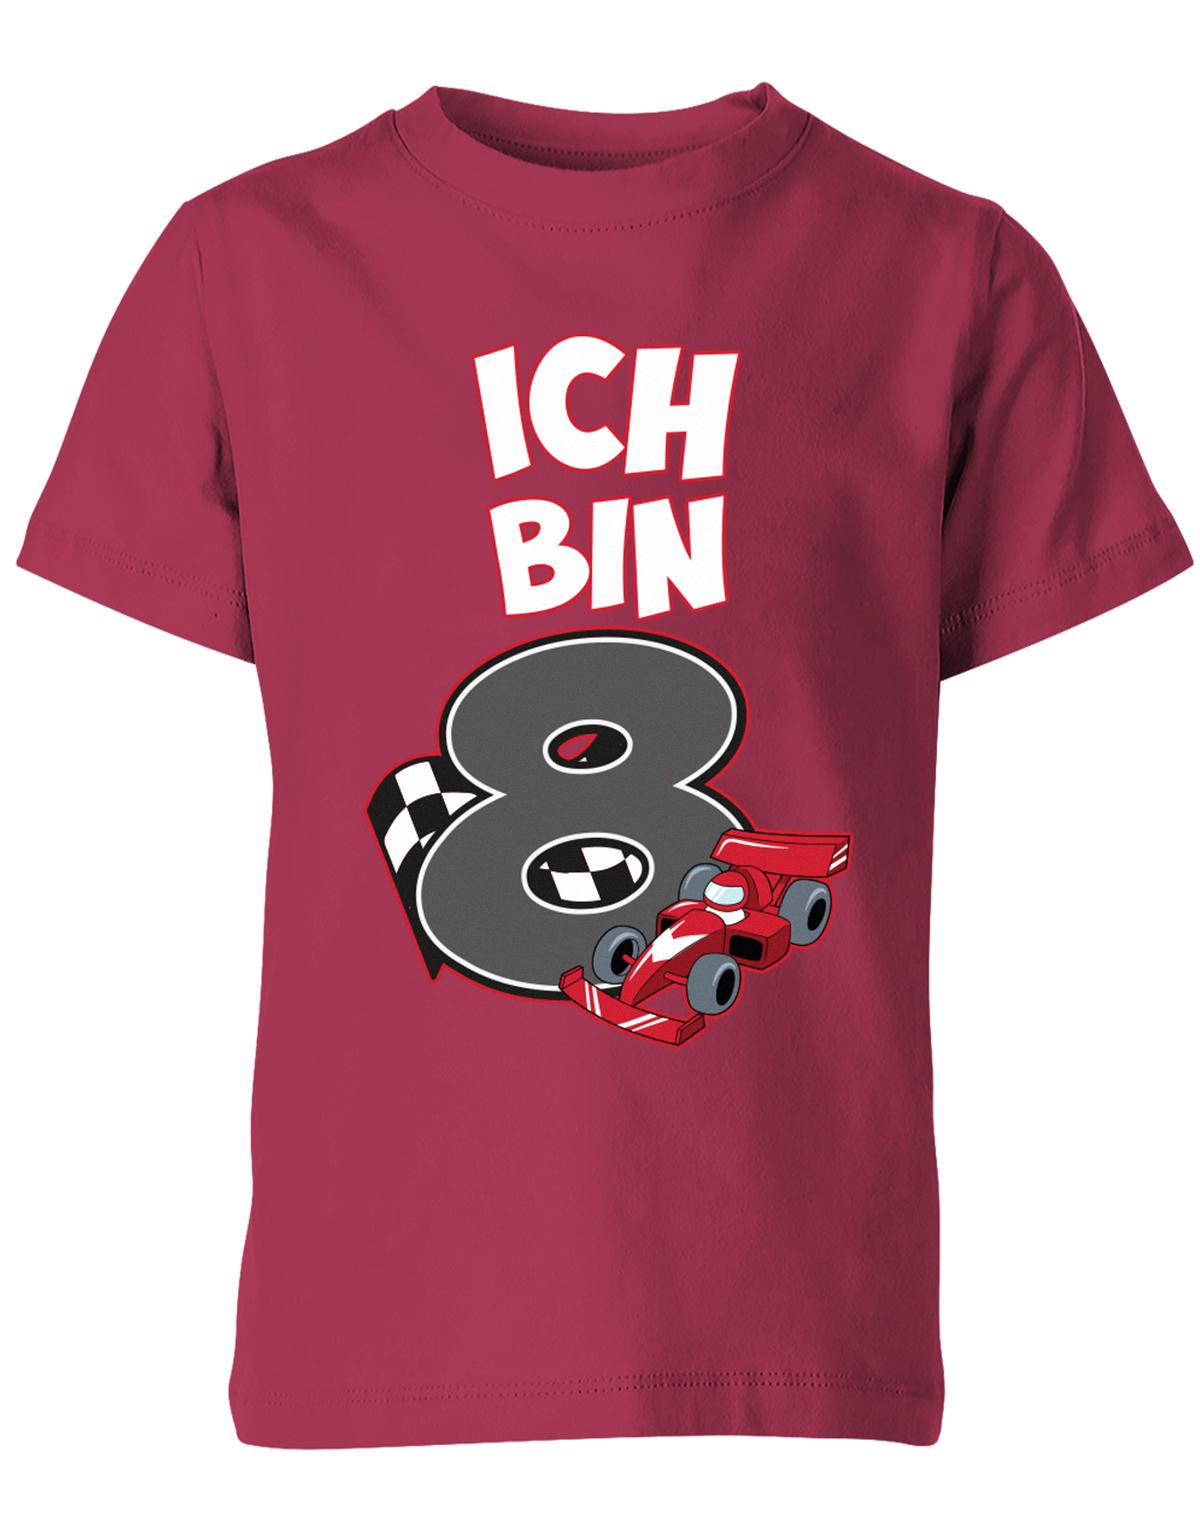 ich-bin-8-autorennen-rennwagen-geburtstag-rennfahrer-kinder-shirt-sorbet